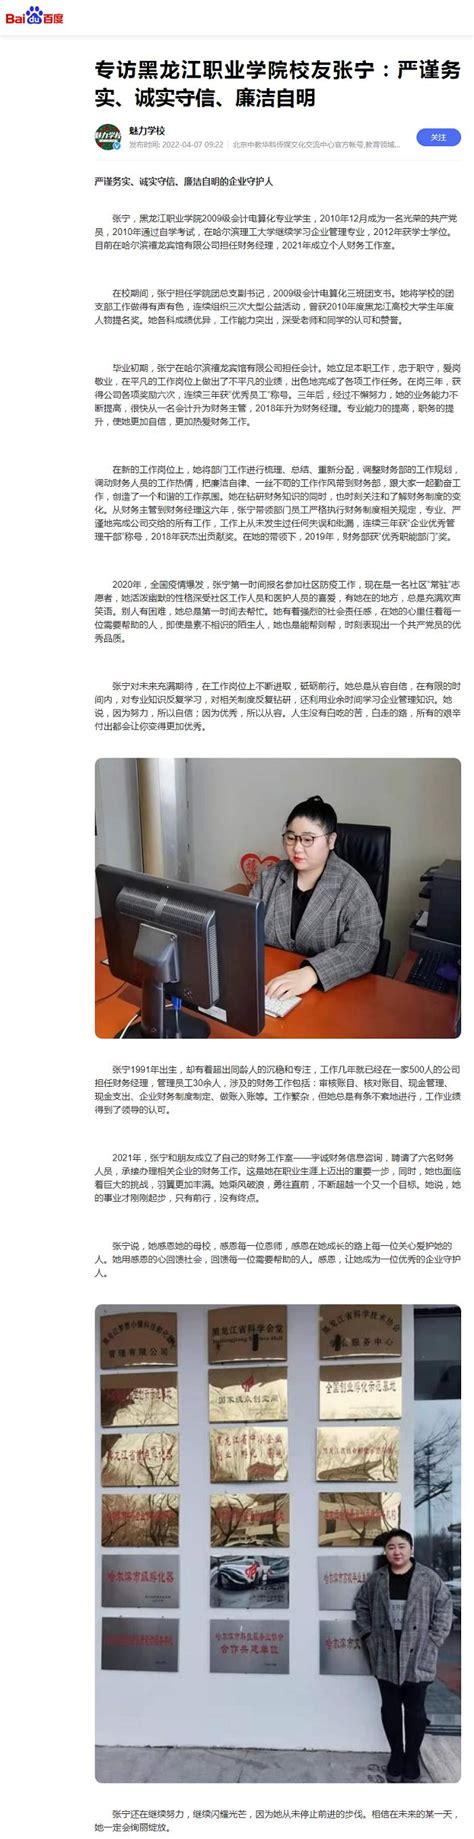 黑龙江十大冰雪旅游宣传推广活动搅热成都 -中国旅游新闻网